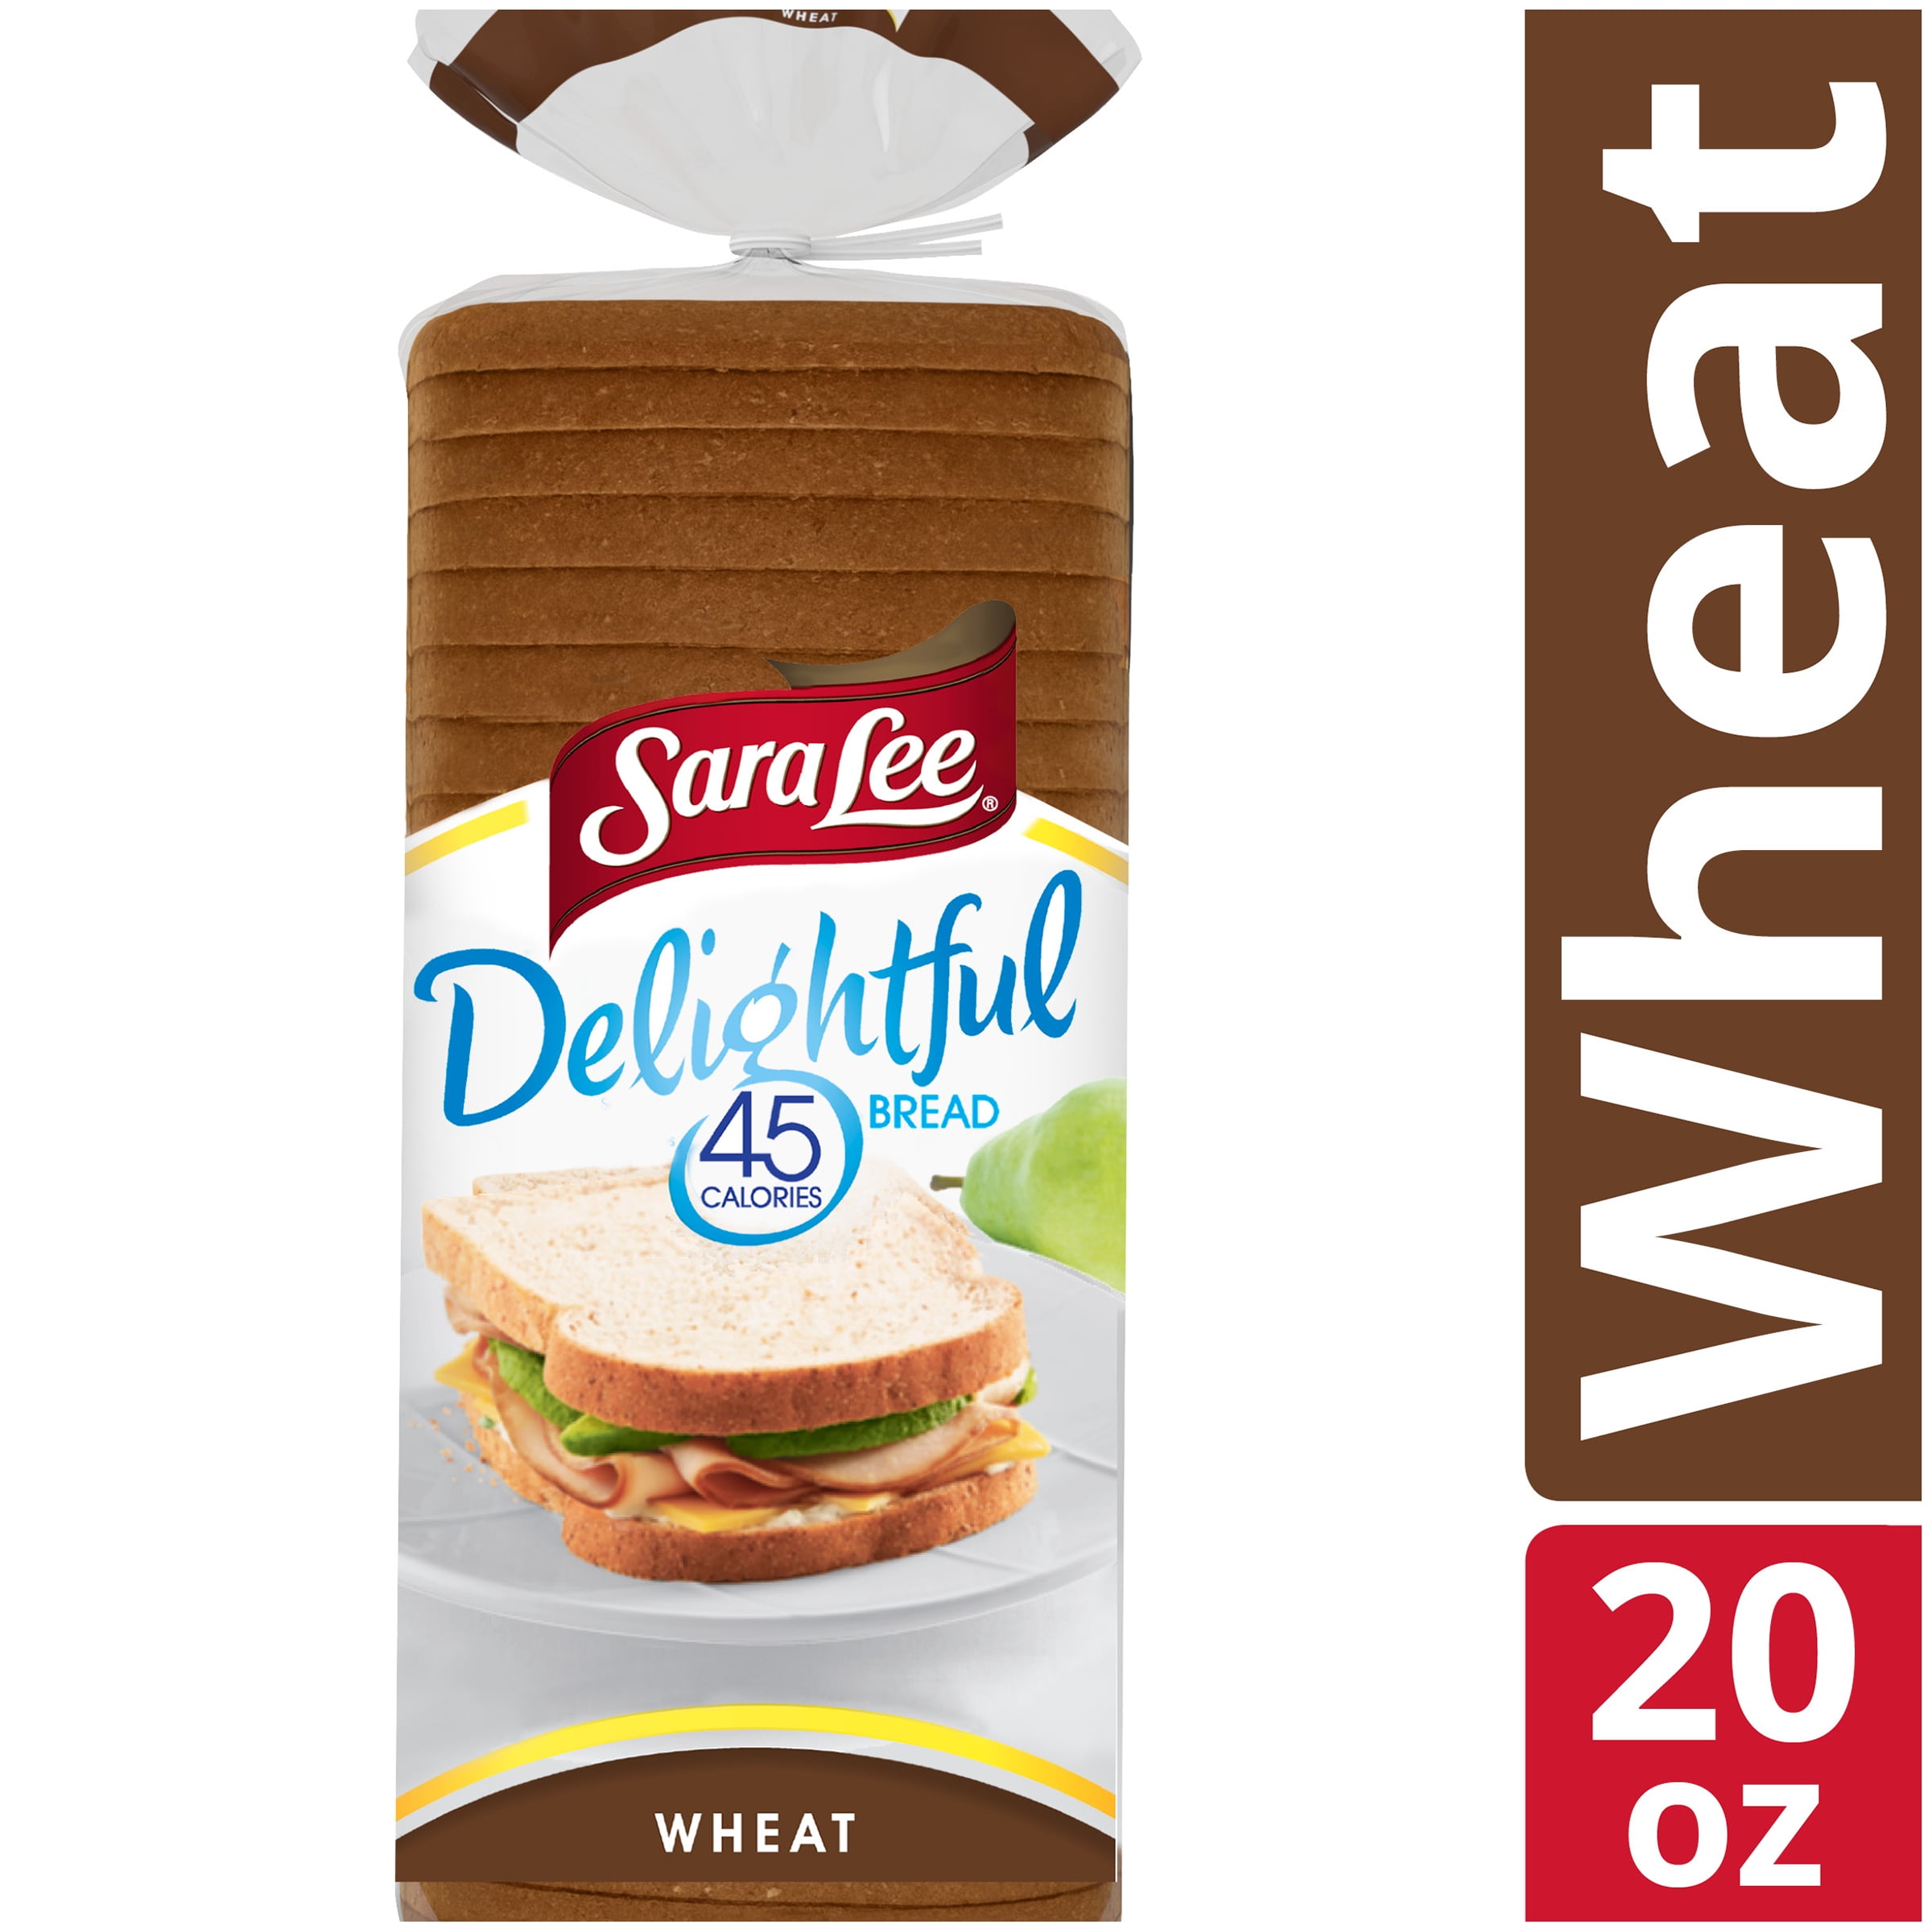 Sara Lee Delightful Wheat Bread, 45 Calories per Slice, 20 oz 